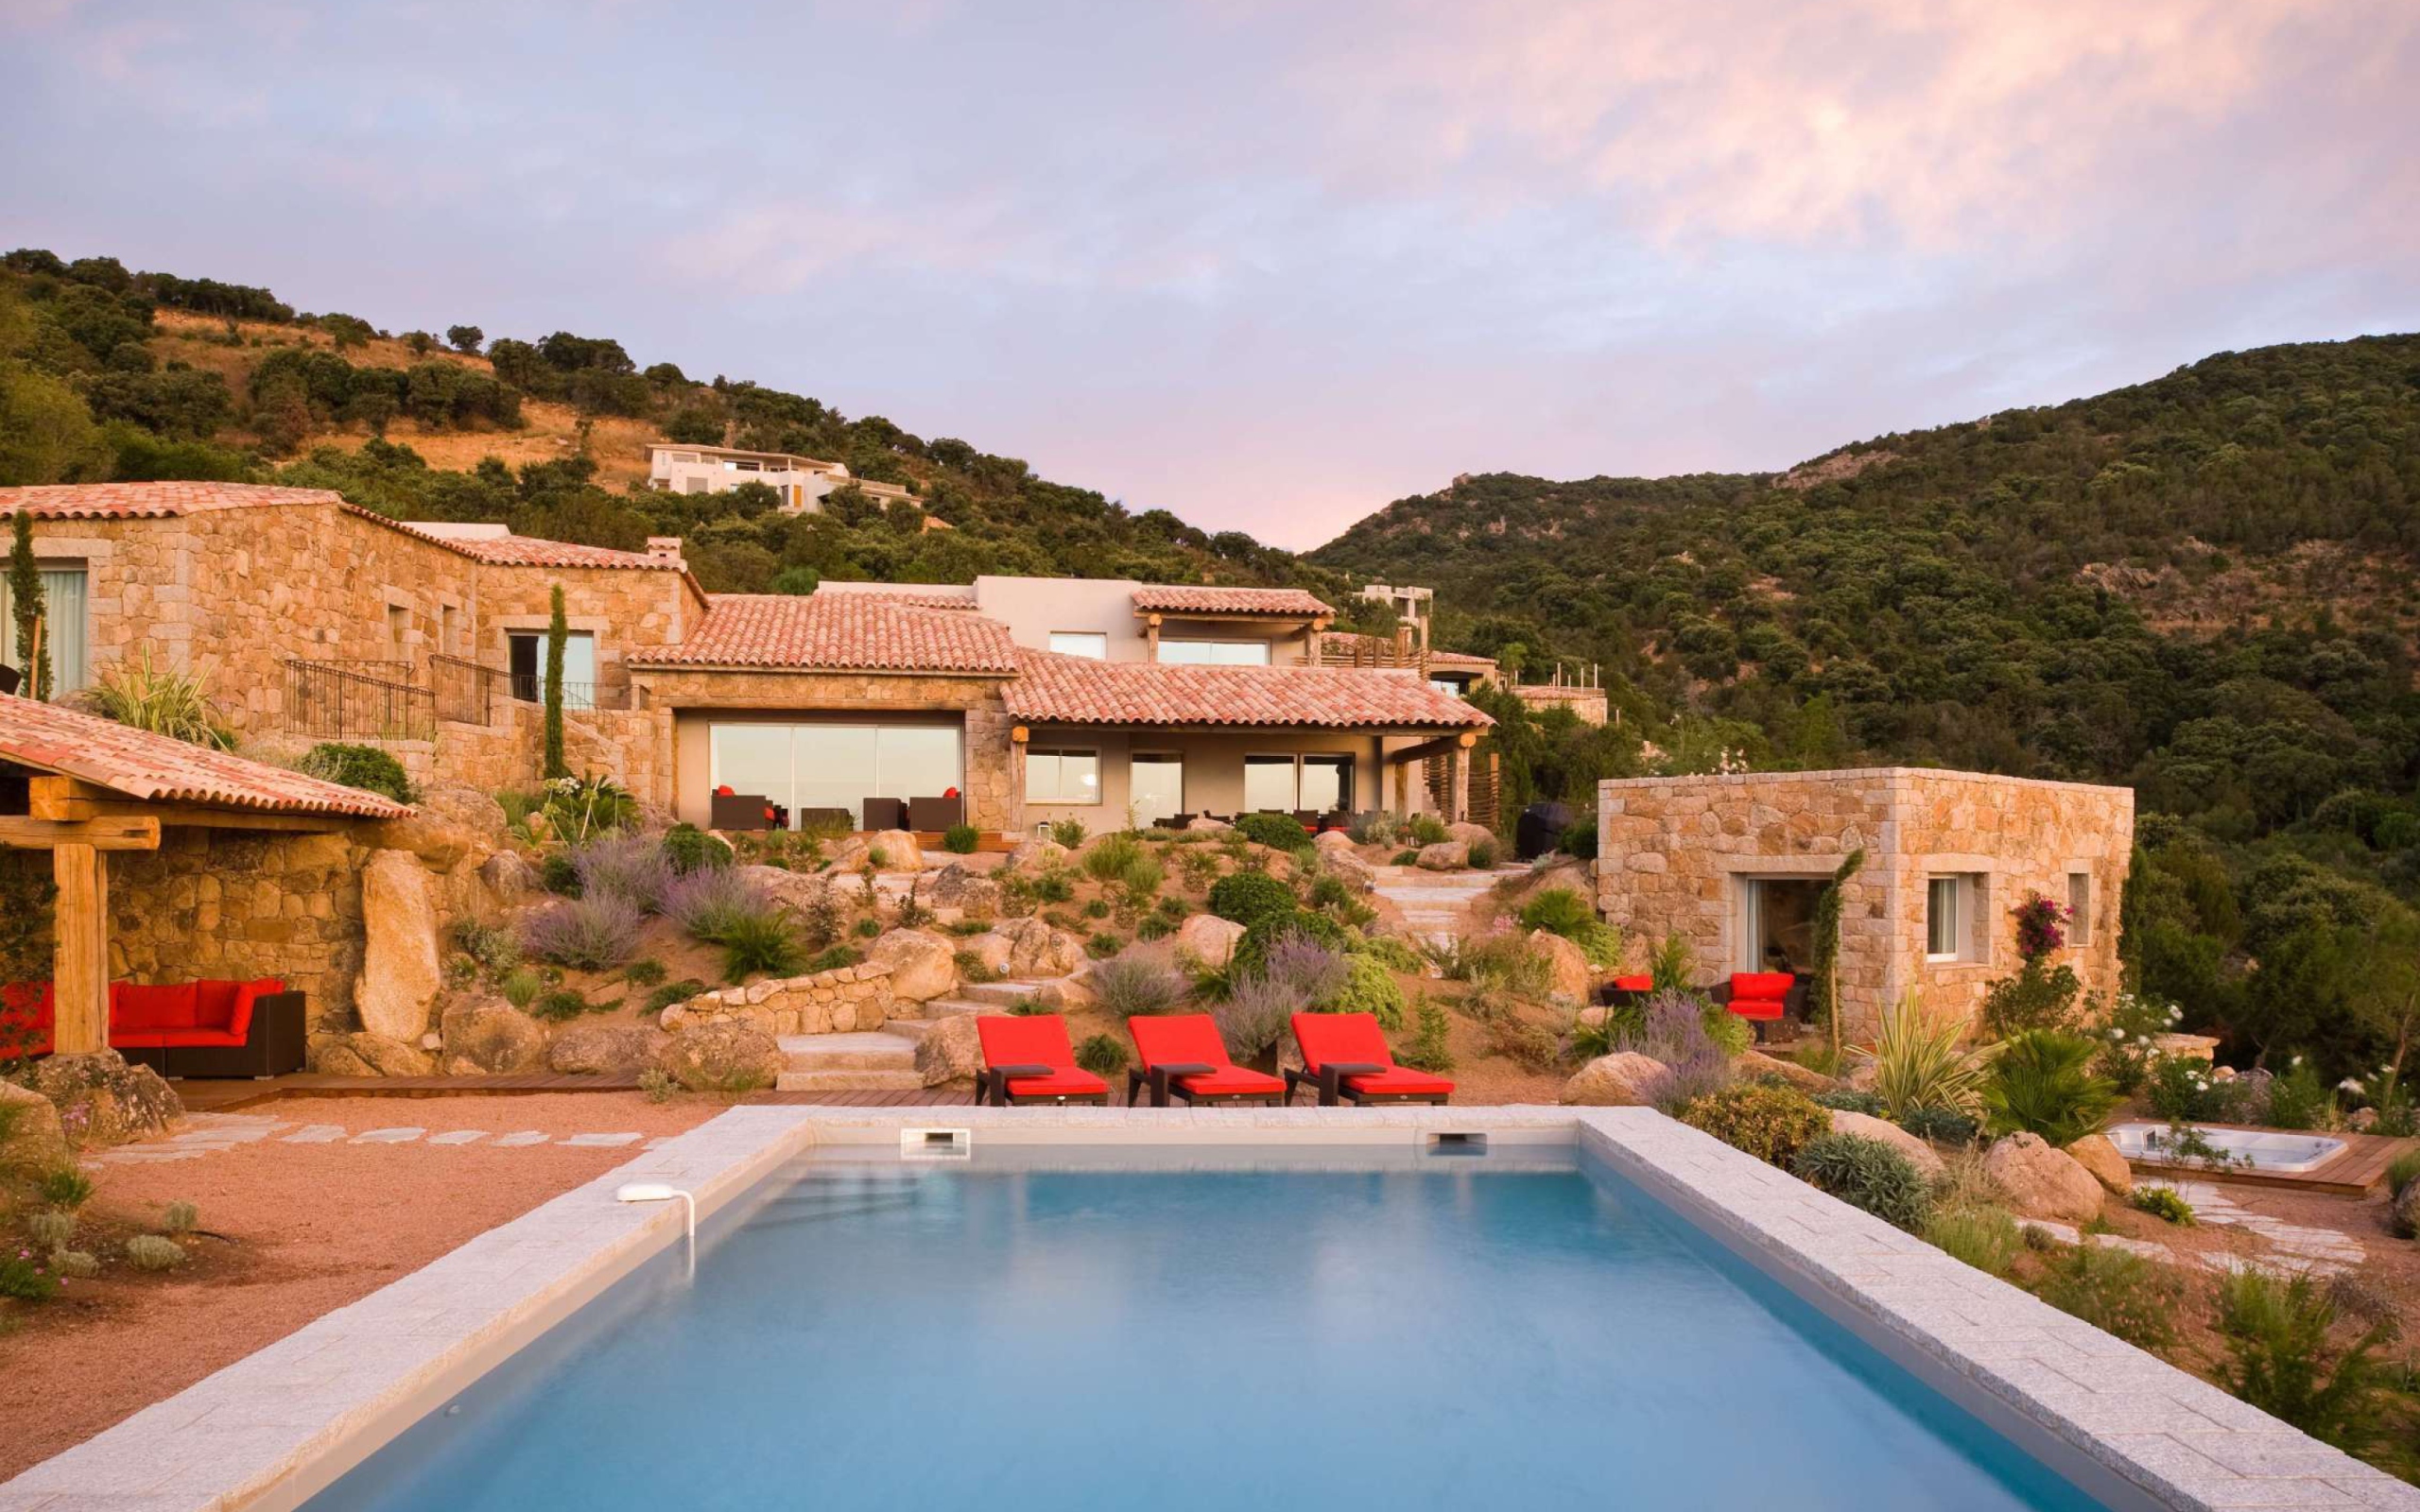 Das Villa Luna, Corsica, France Wallpaper 2560x1600